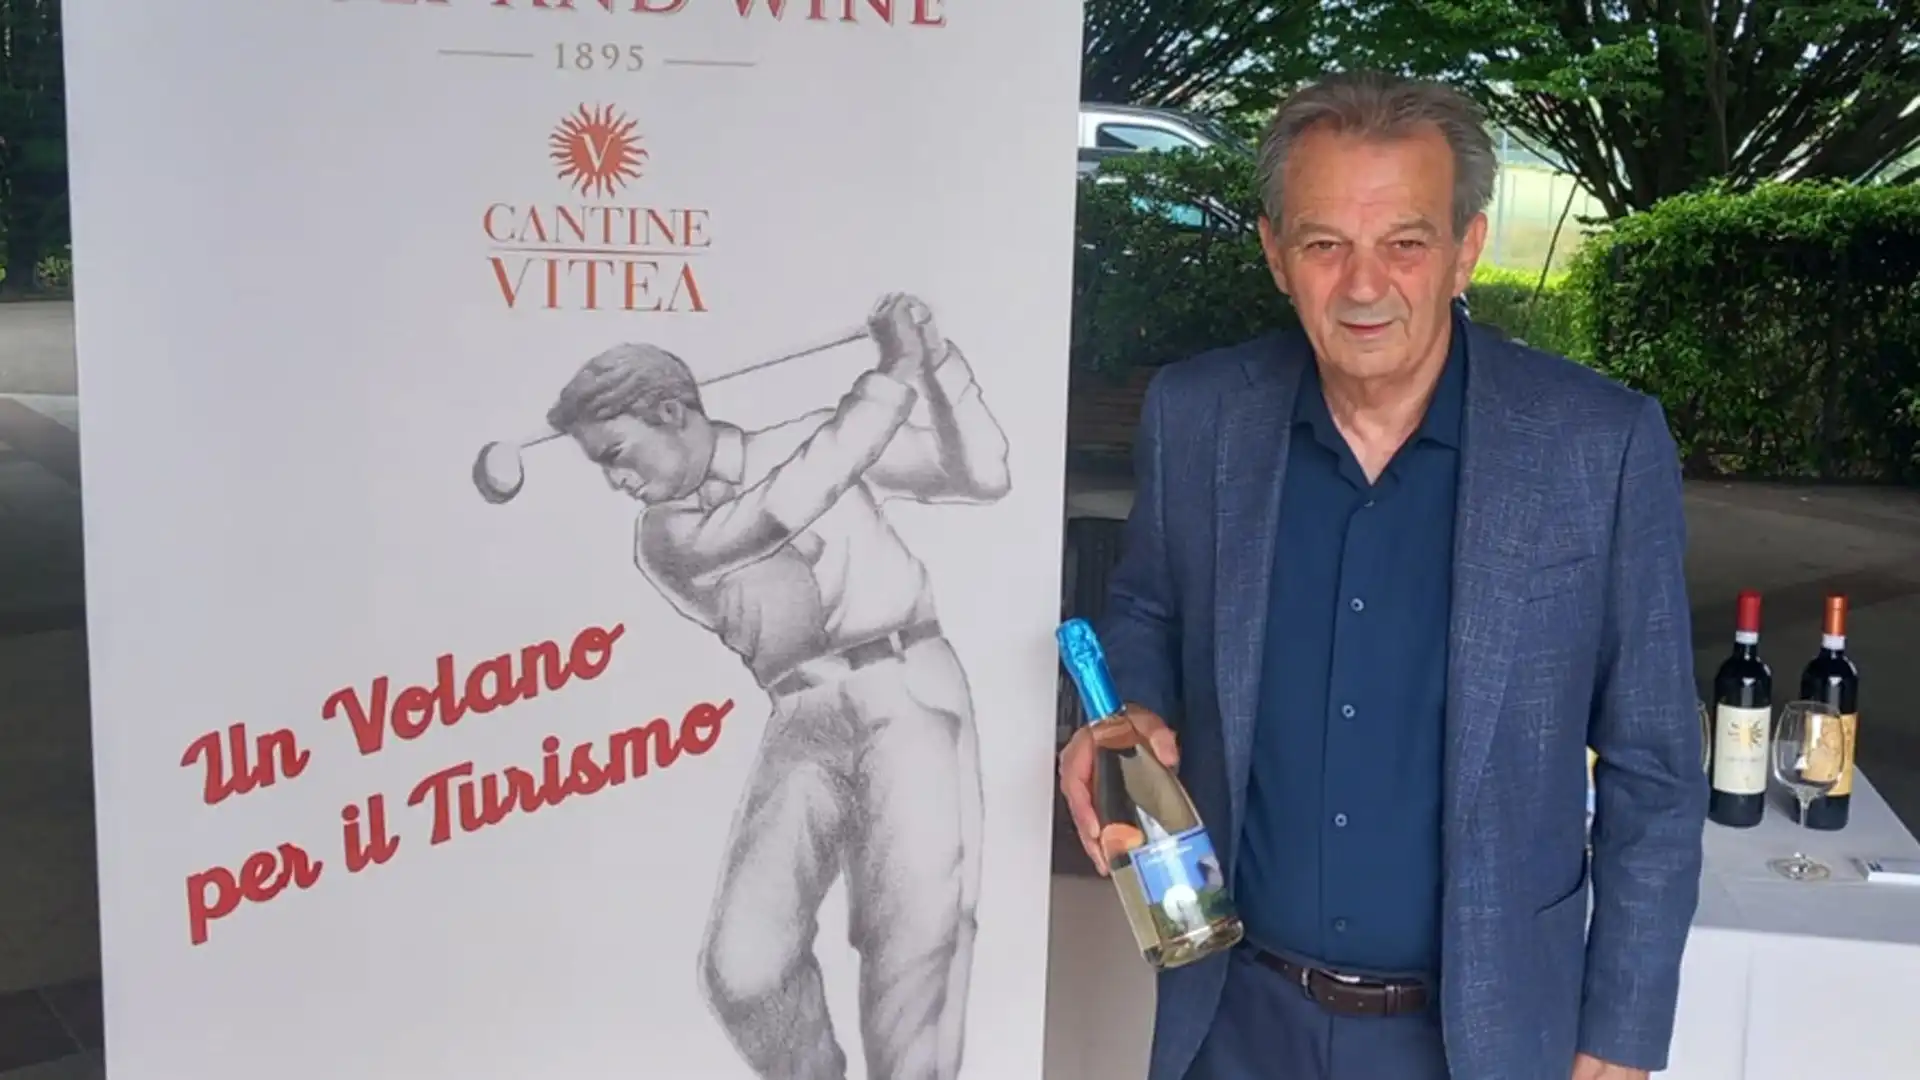 Qui Faravelli con una bottiglia griffata Golf and Wine 1895